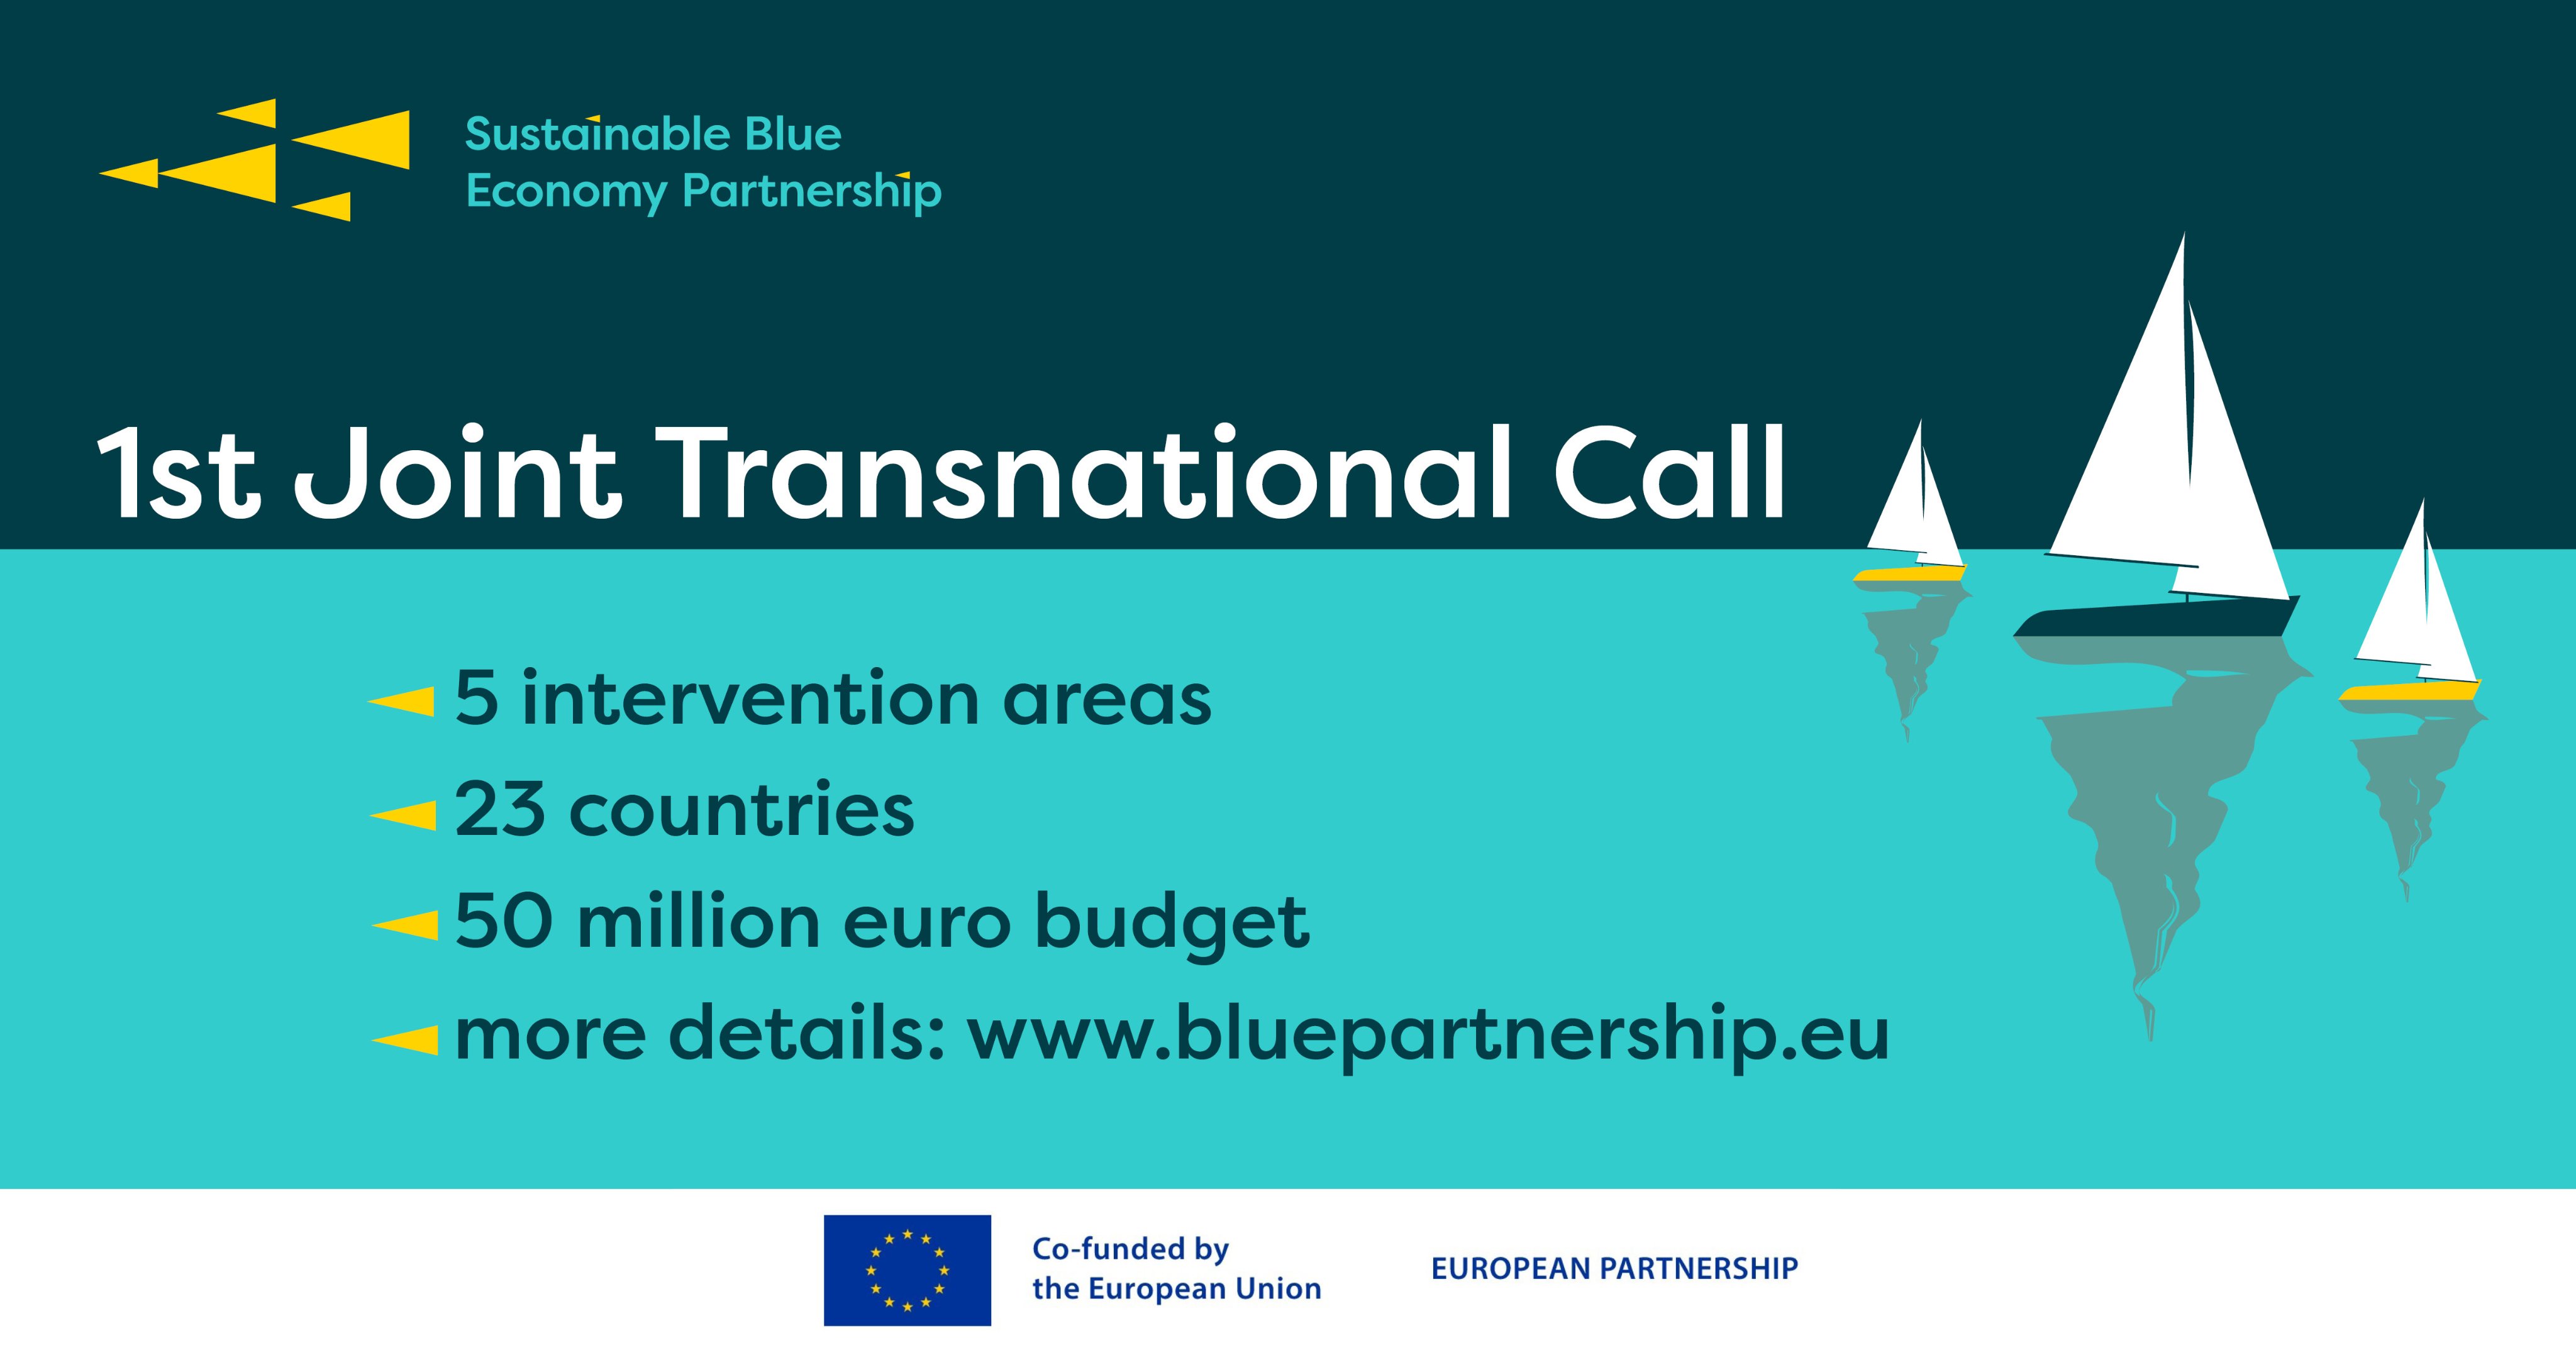 1ª Concurso Transnacional Sustainable Blue Economy Partnership